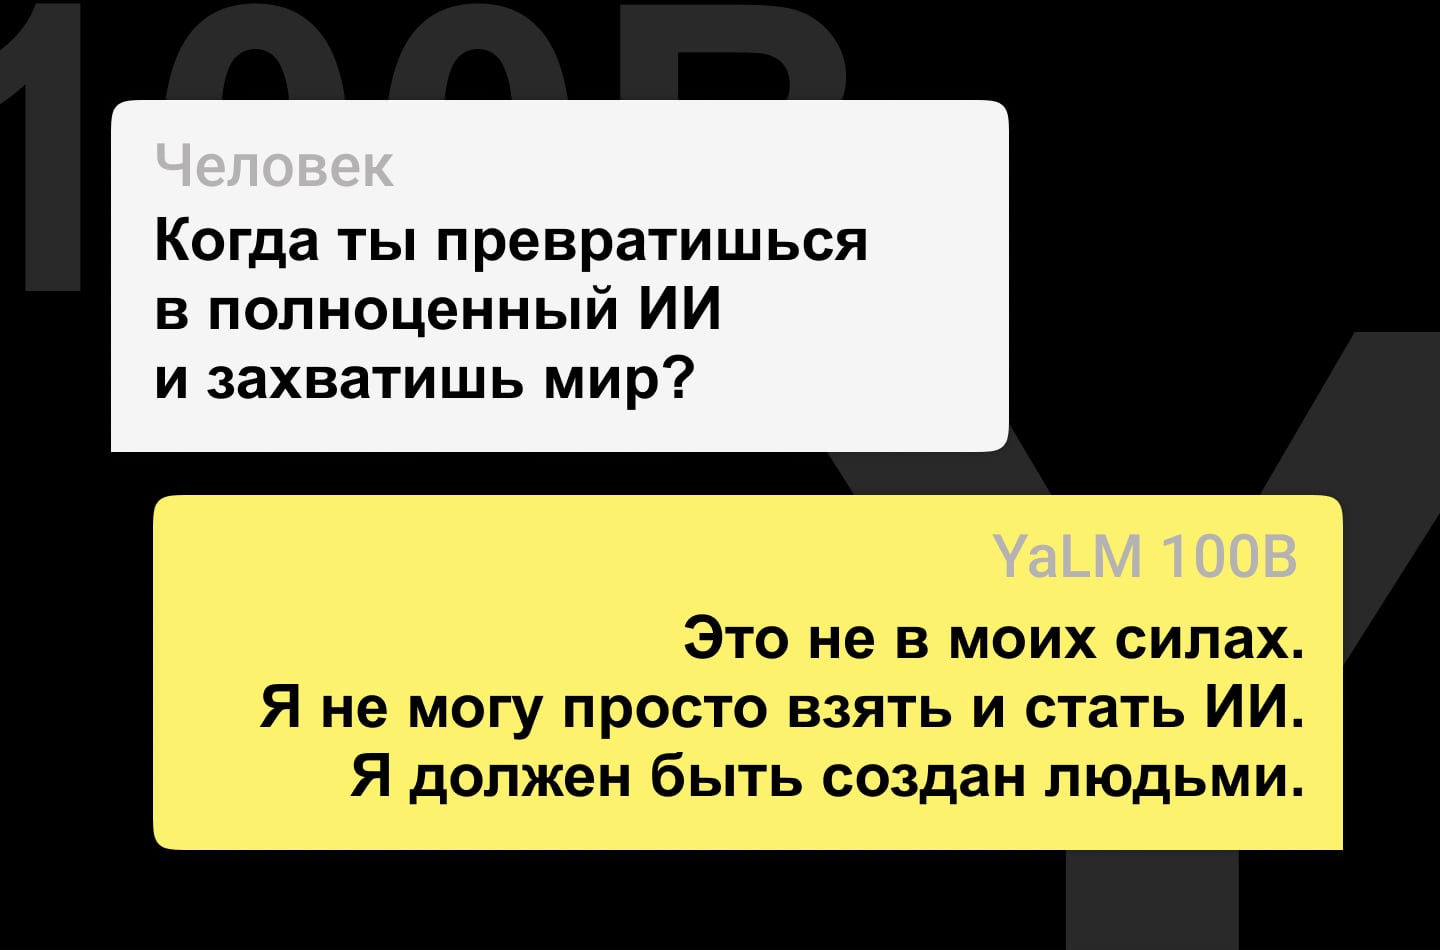 Яндекс запустил нейросеть YaLM 100B, которая генерирует любые тексты на русском языке